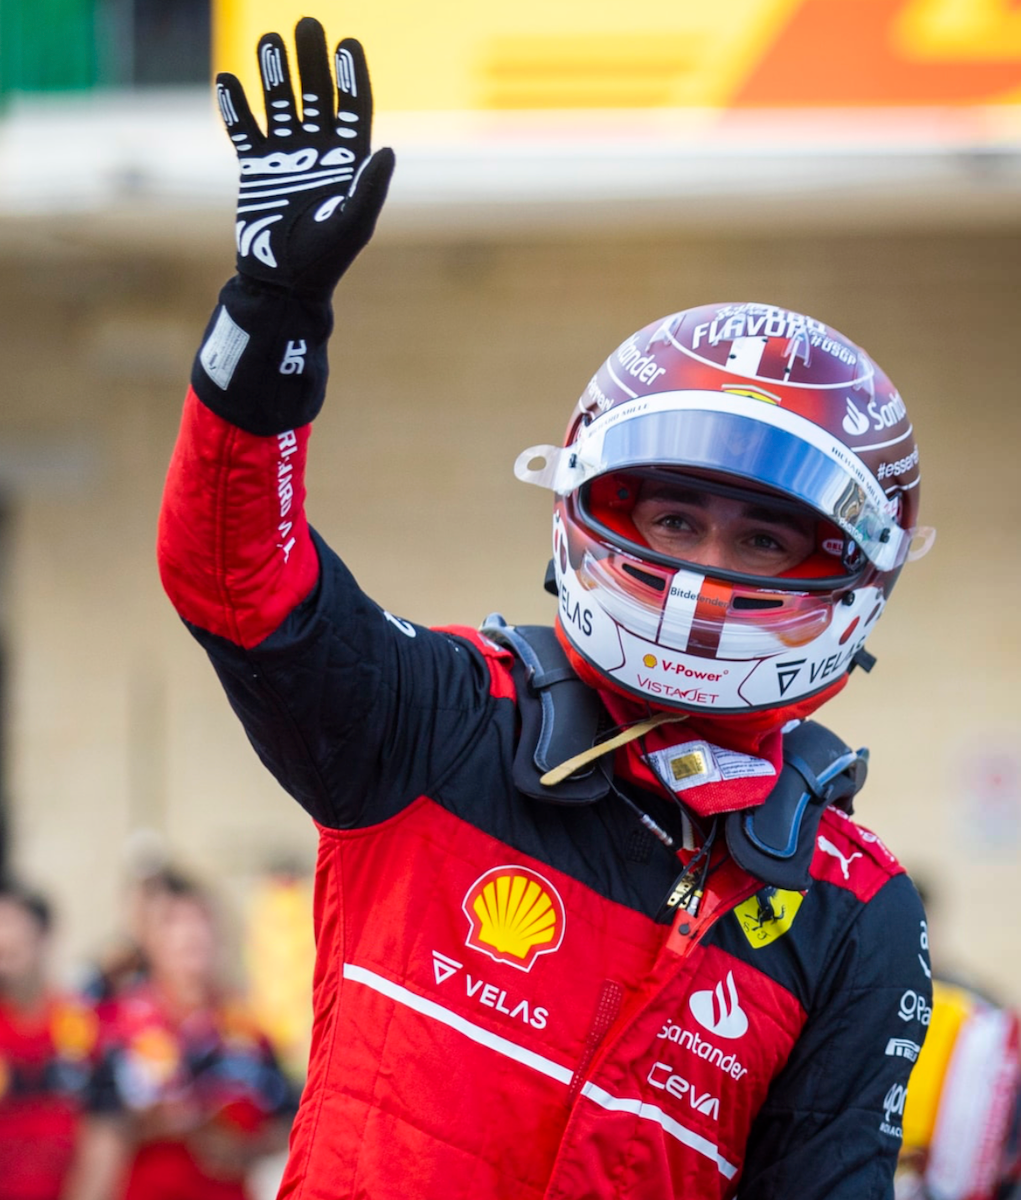 2022 Charles Leclerc Race Scuderia Ferrari F1 Gloves